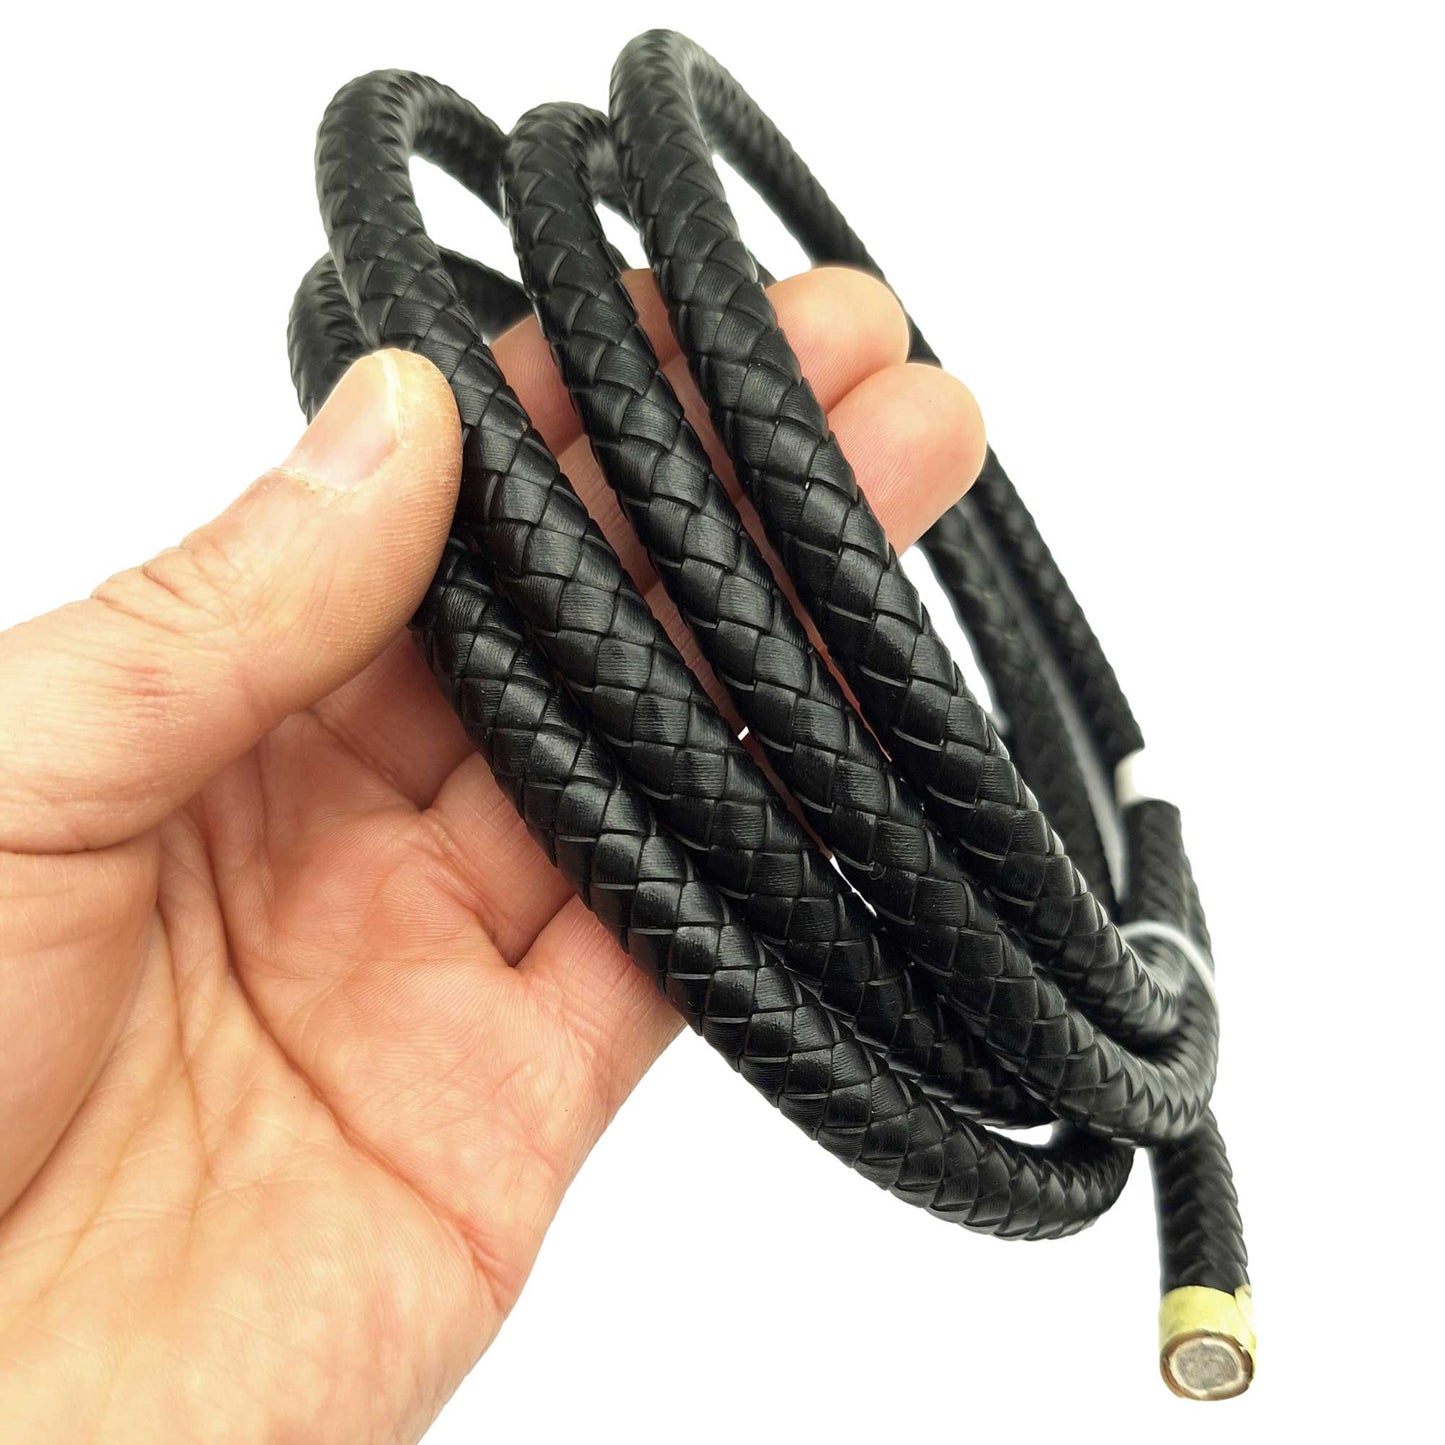 ShapesbyX Cordons Bolo en cuir tressé de 10 mm de diamètre, noir, pour la fabrication de bijoux, bracelet en cuir rond de 1 cm